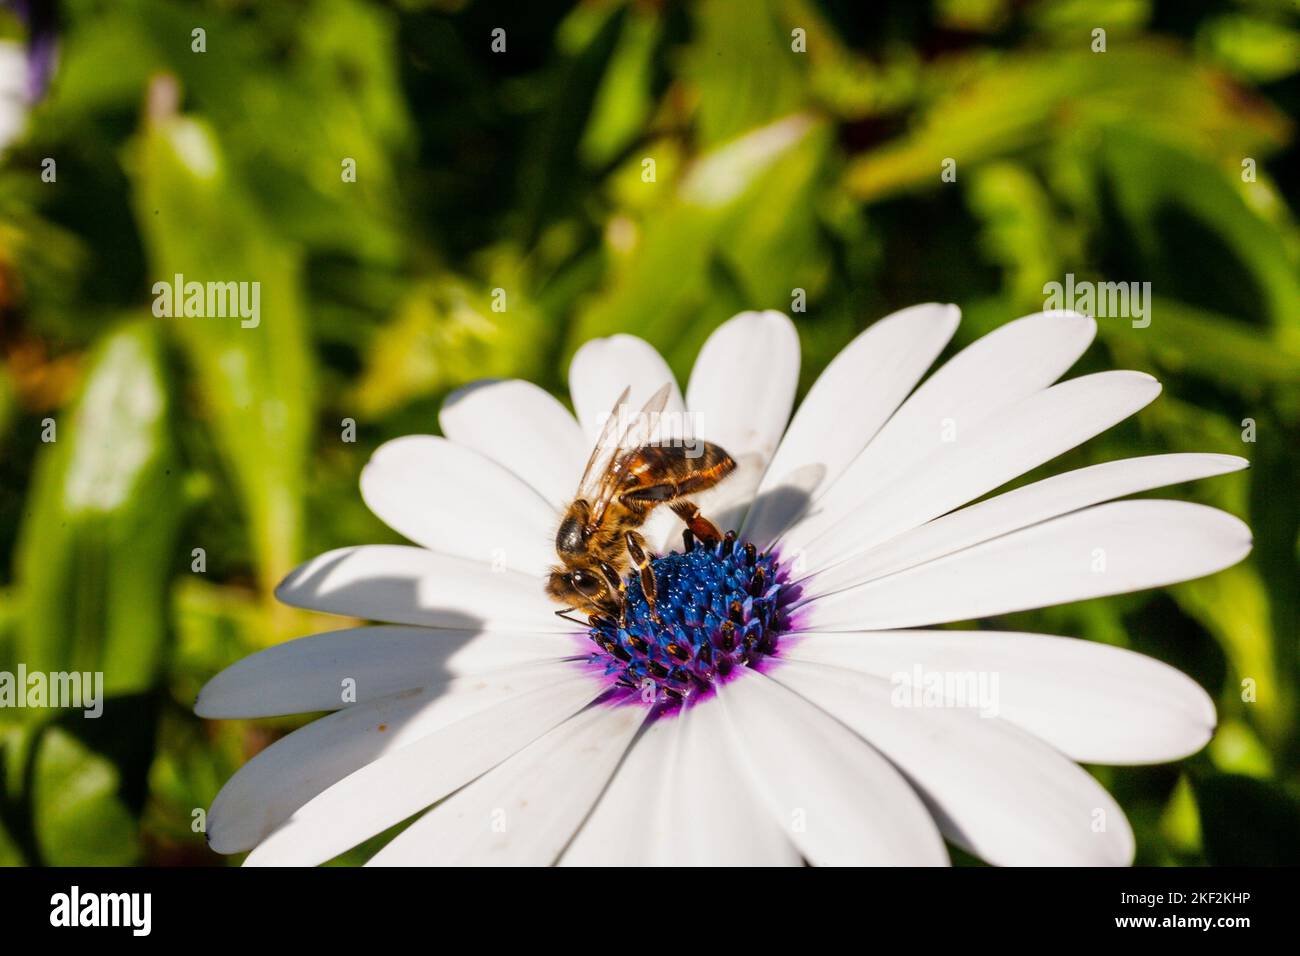 beautiful daisy flower in a field Stock Photo